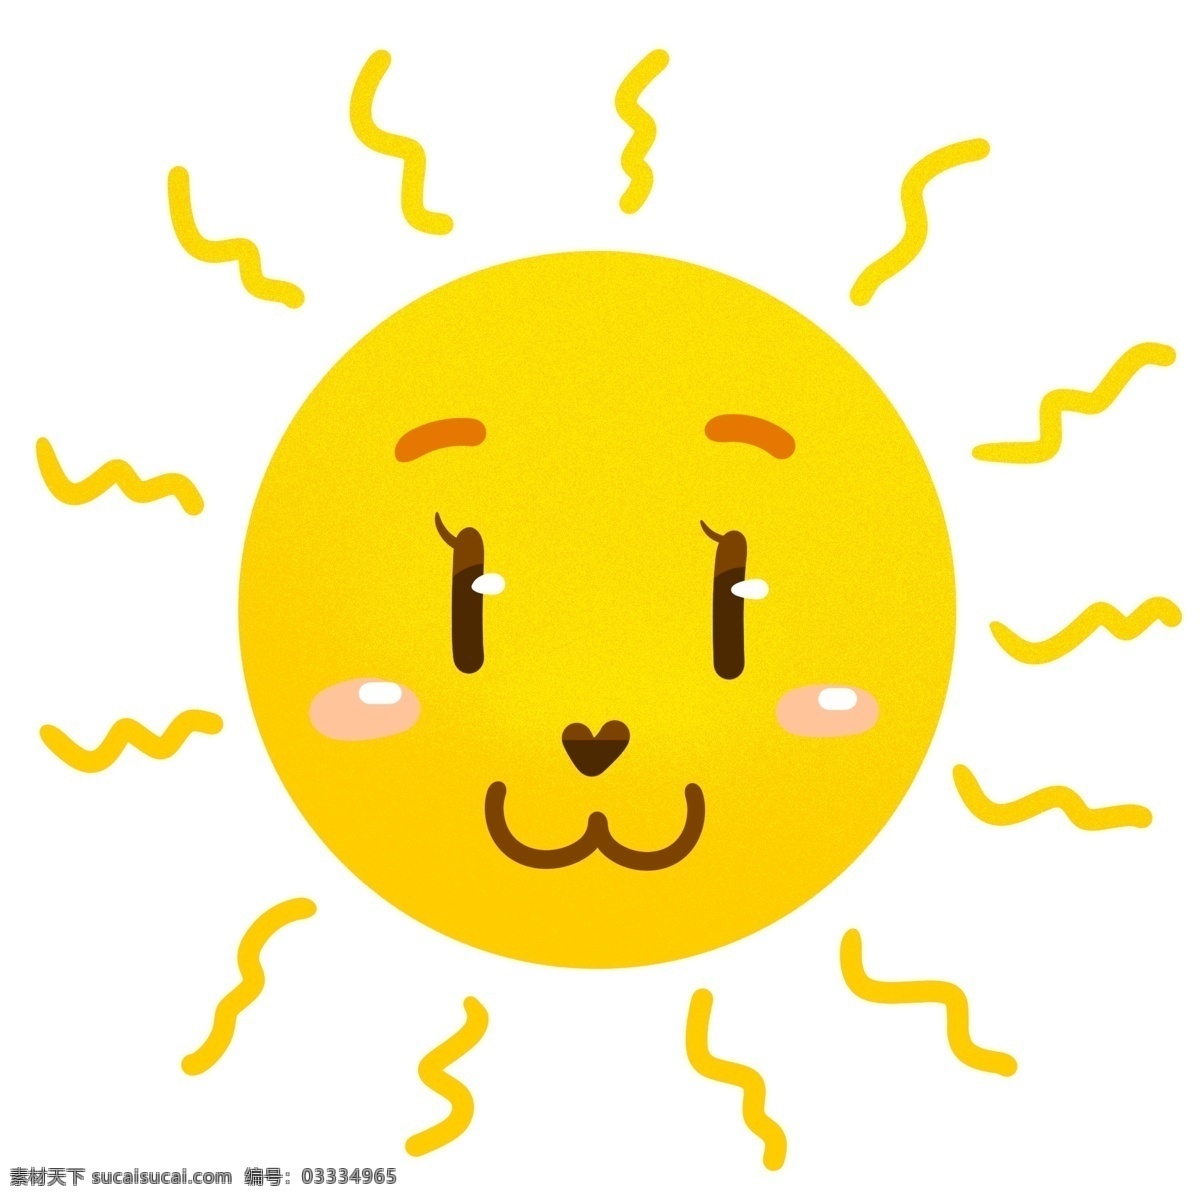 日月星辰 太阳 烈日 表情 卡通 可爱 天气 阳光 行星